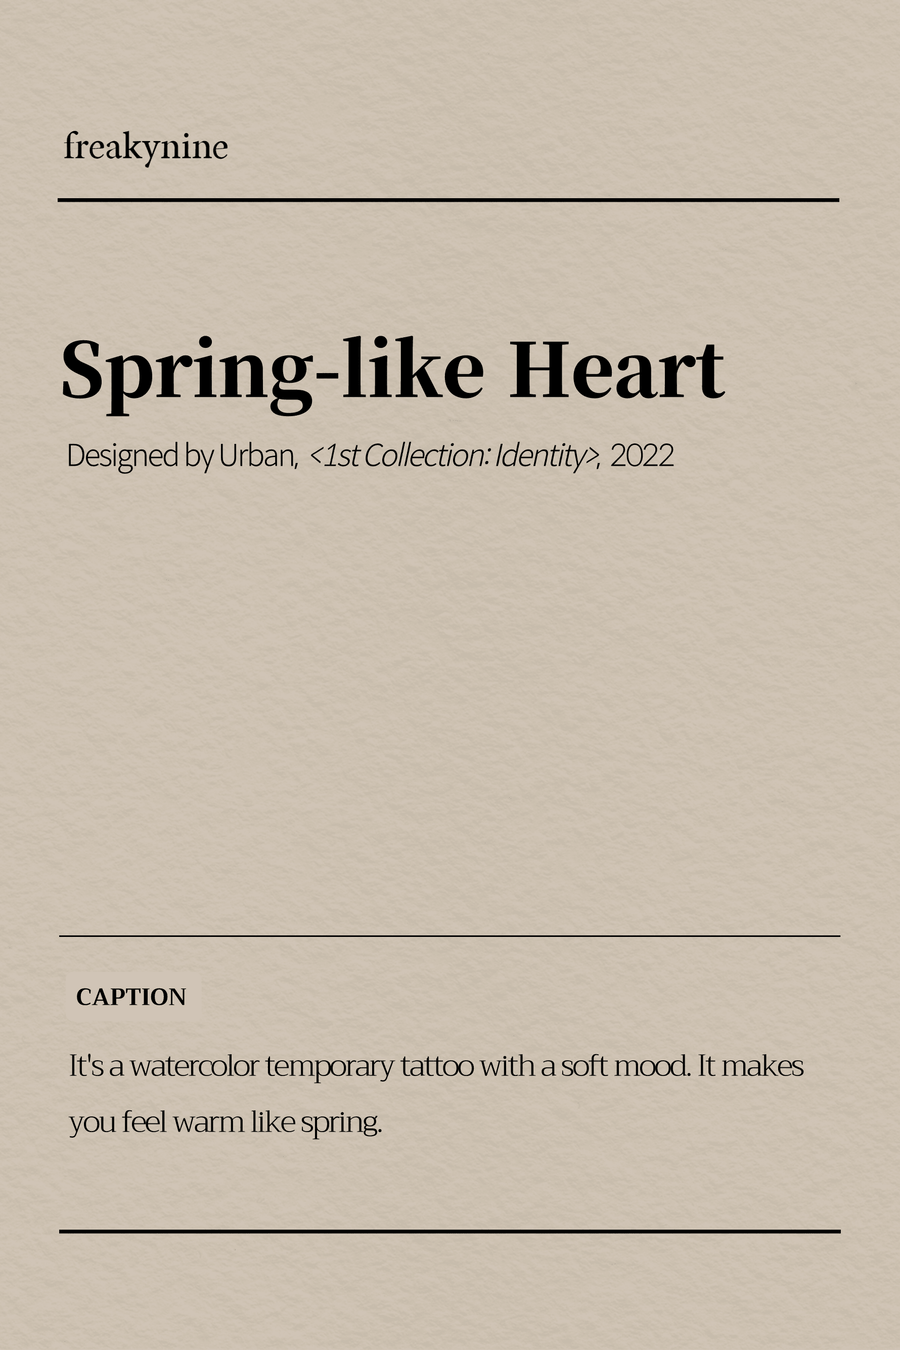 (Urban) Spring-like Heart (2EA) - freakynine